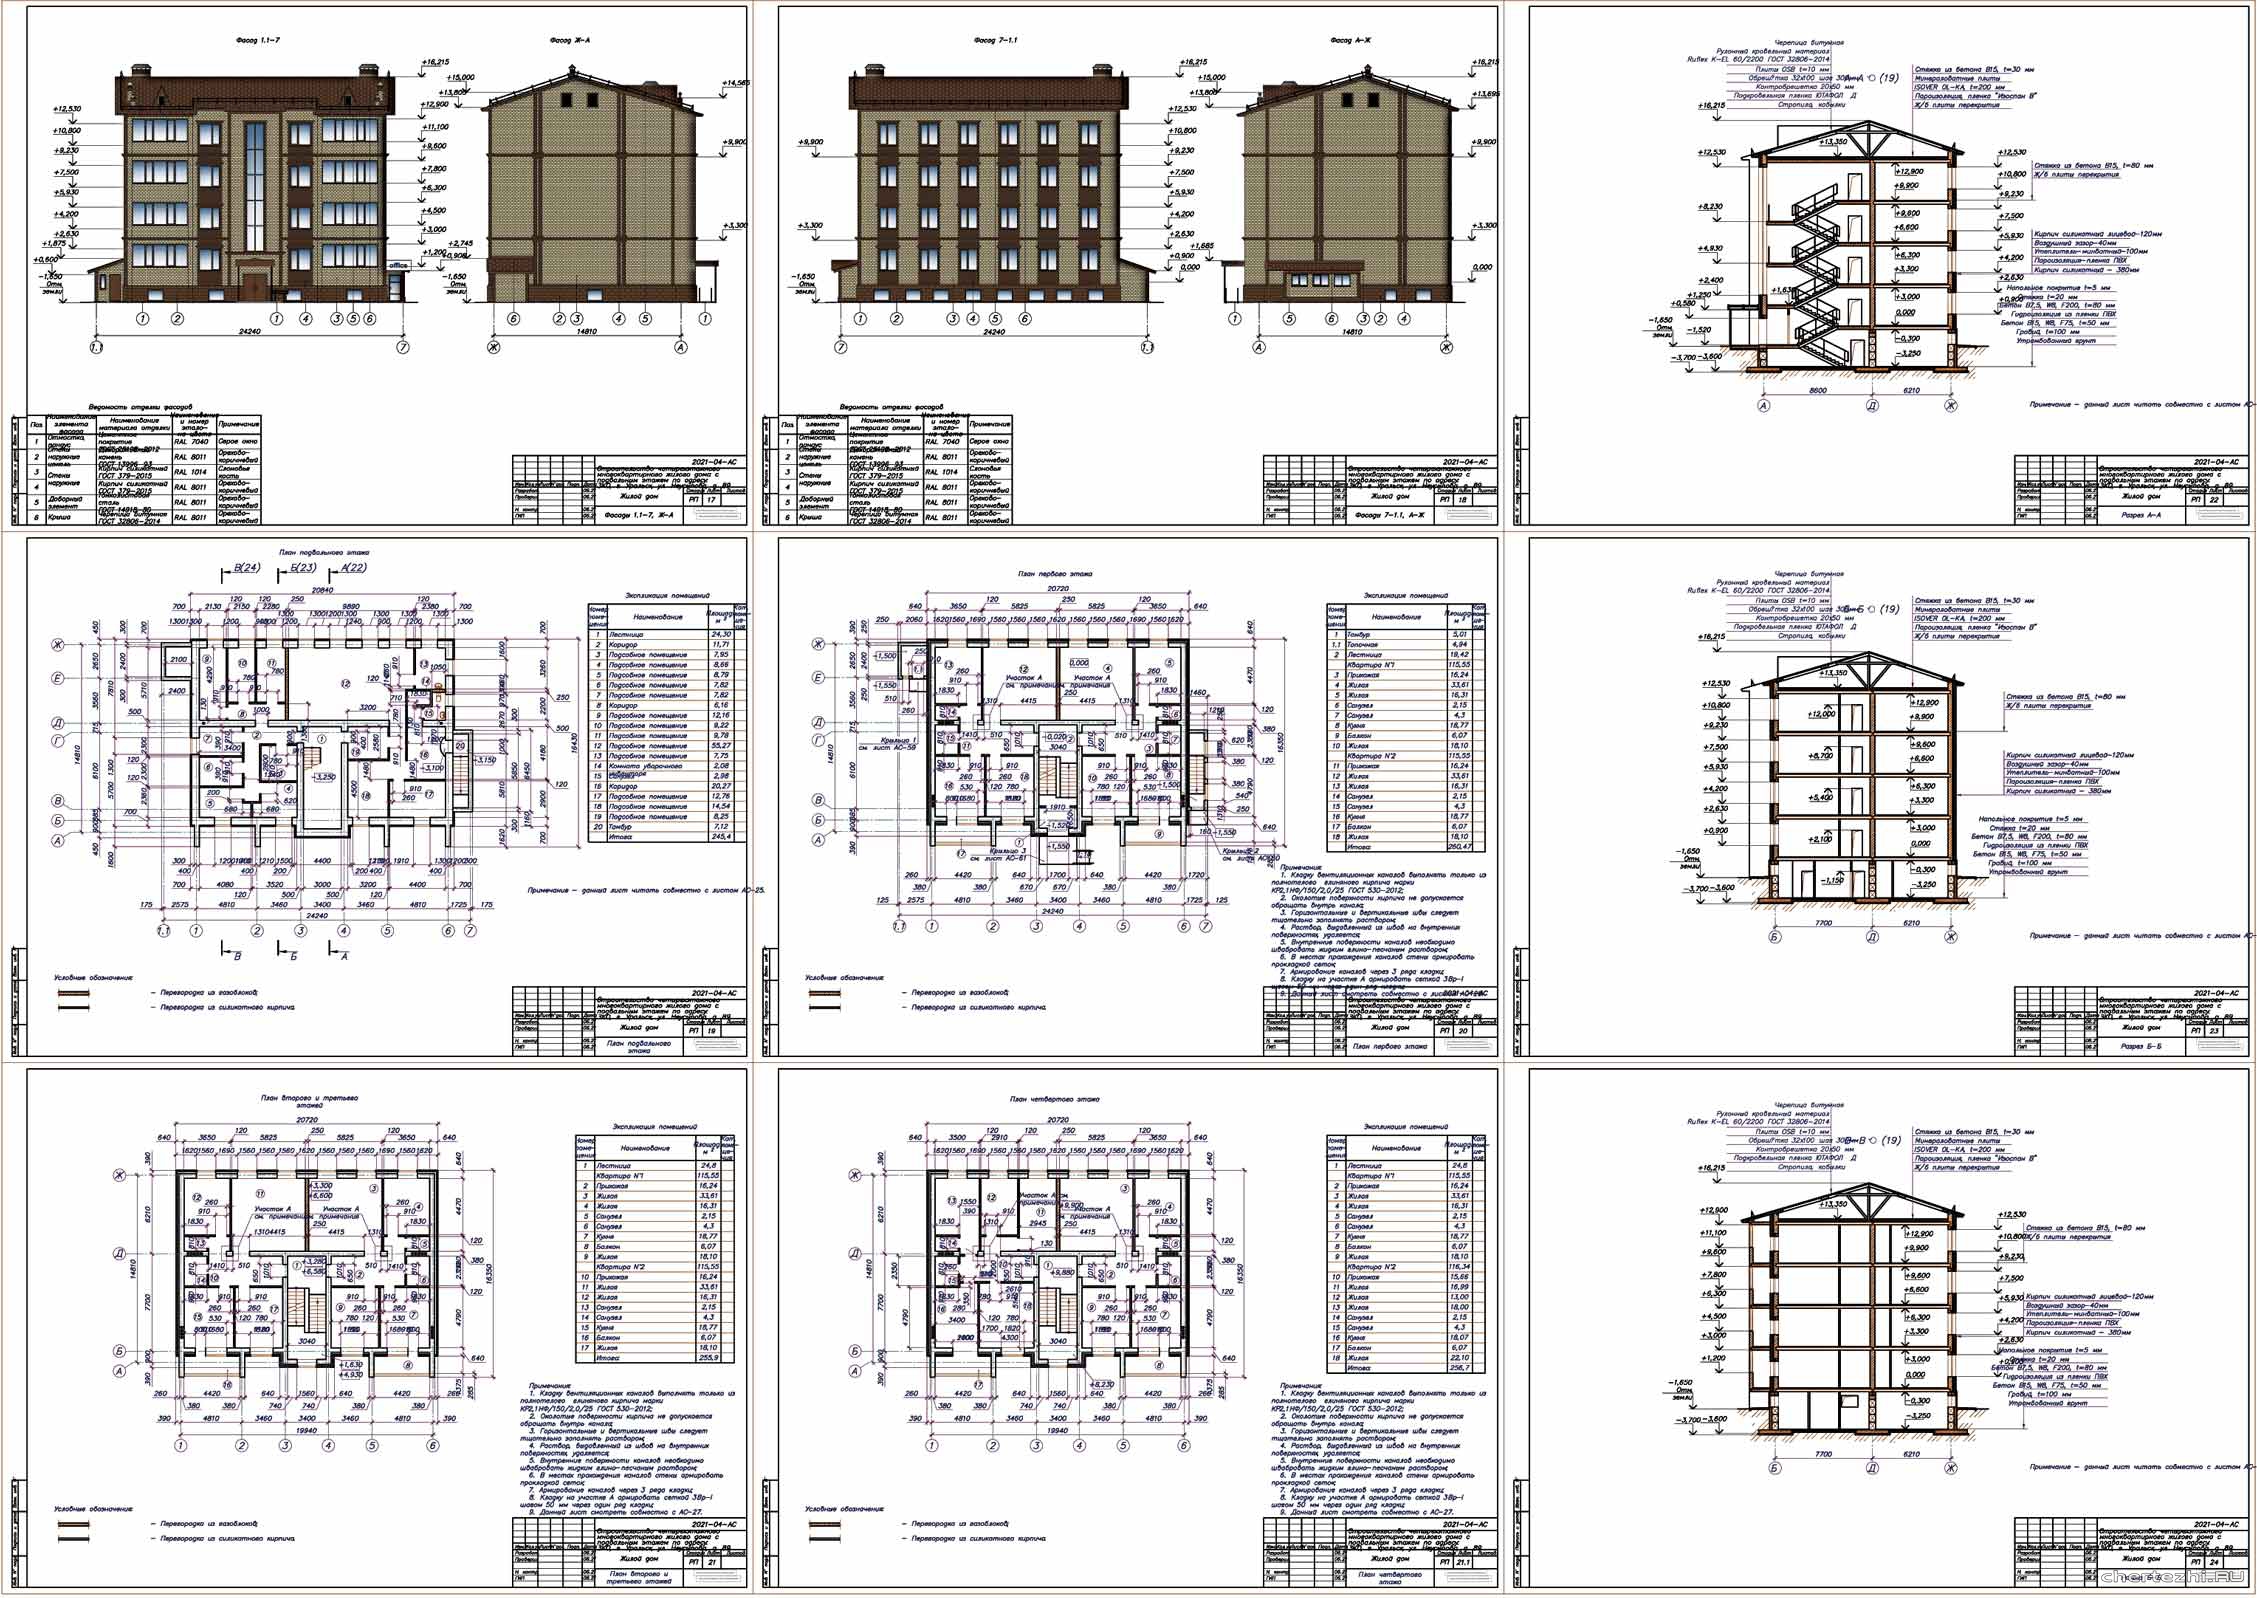 АС Строительство 4-х этажного многоквартирного жилого дома с подвальным этажом под офис 24,24 х 14,81 м в г. Уральск